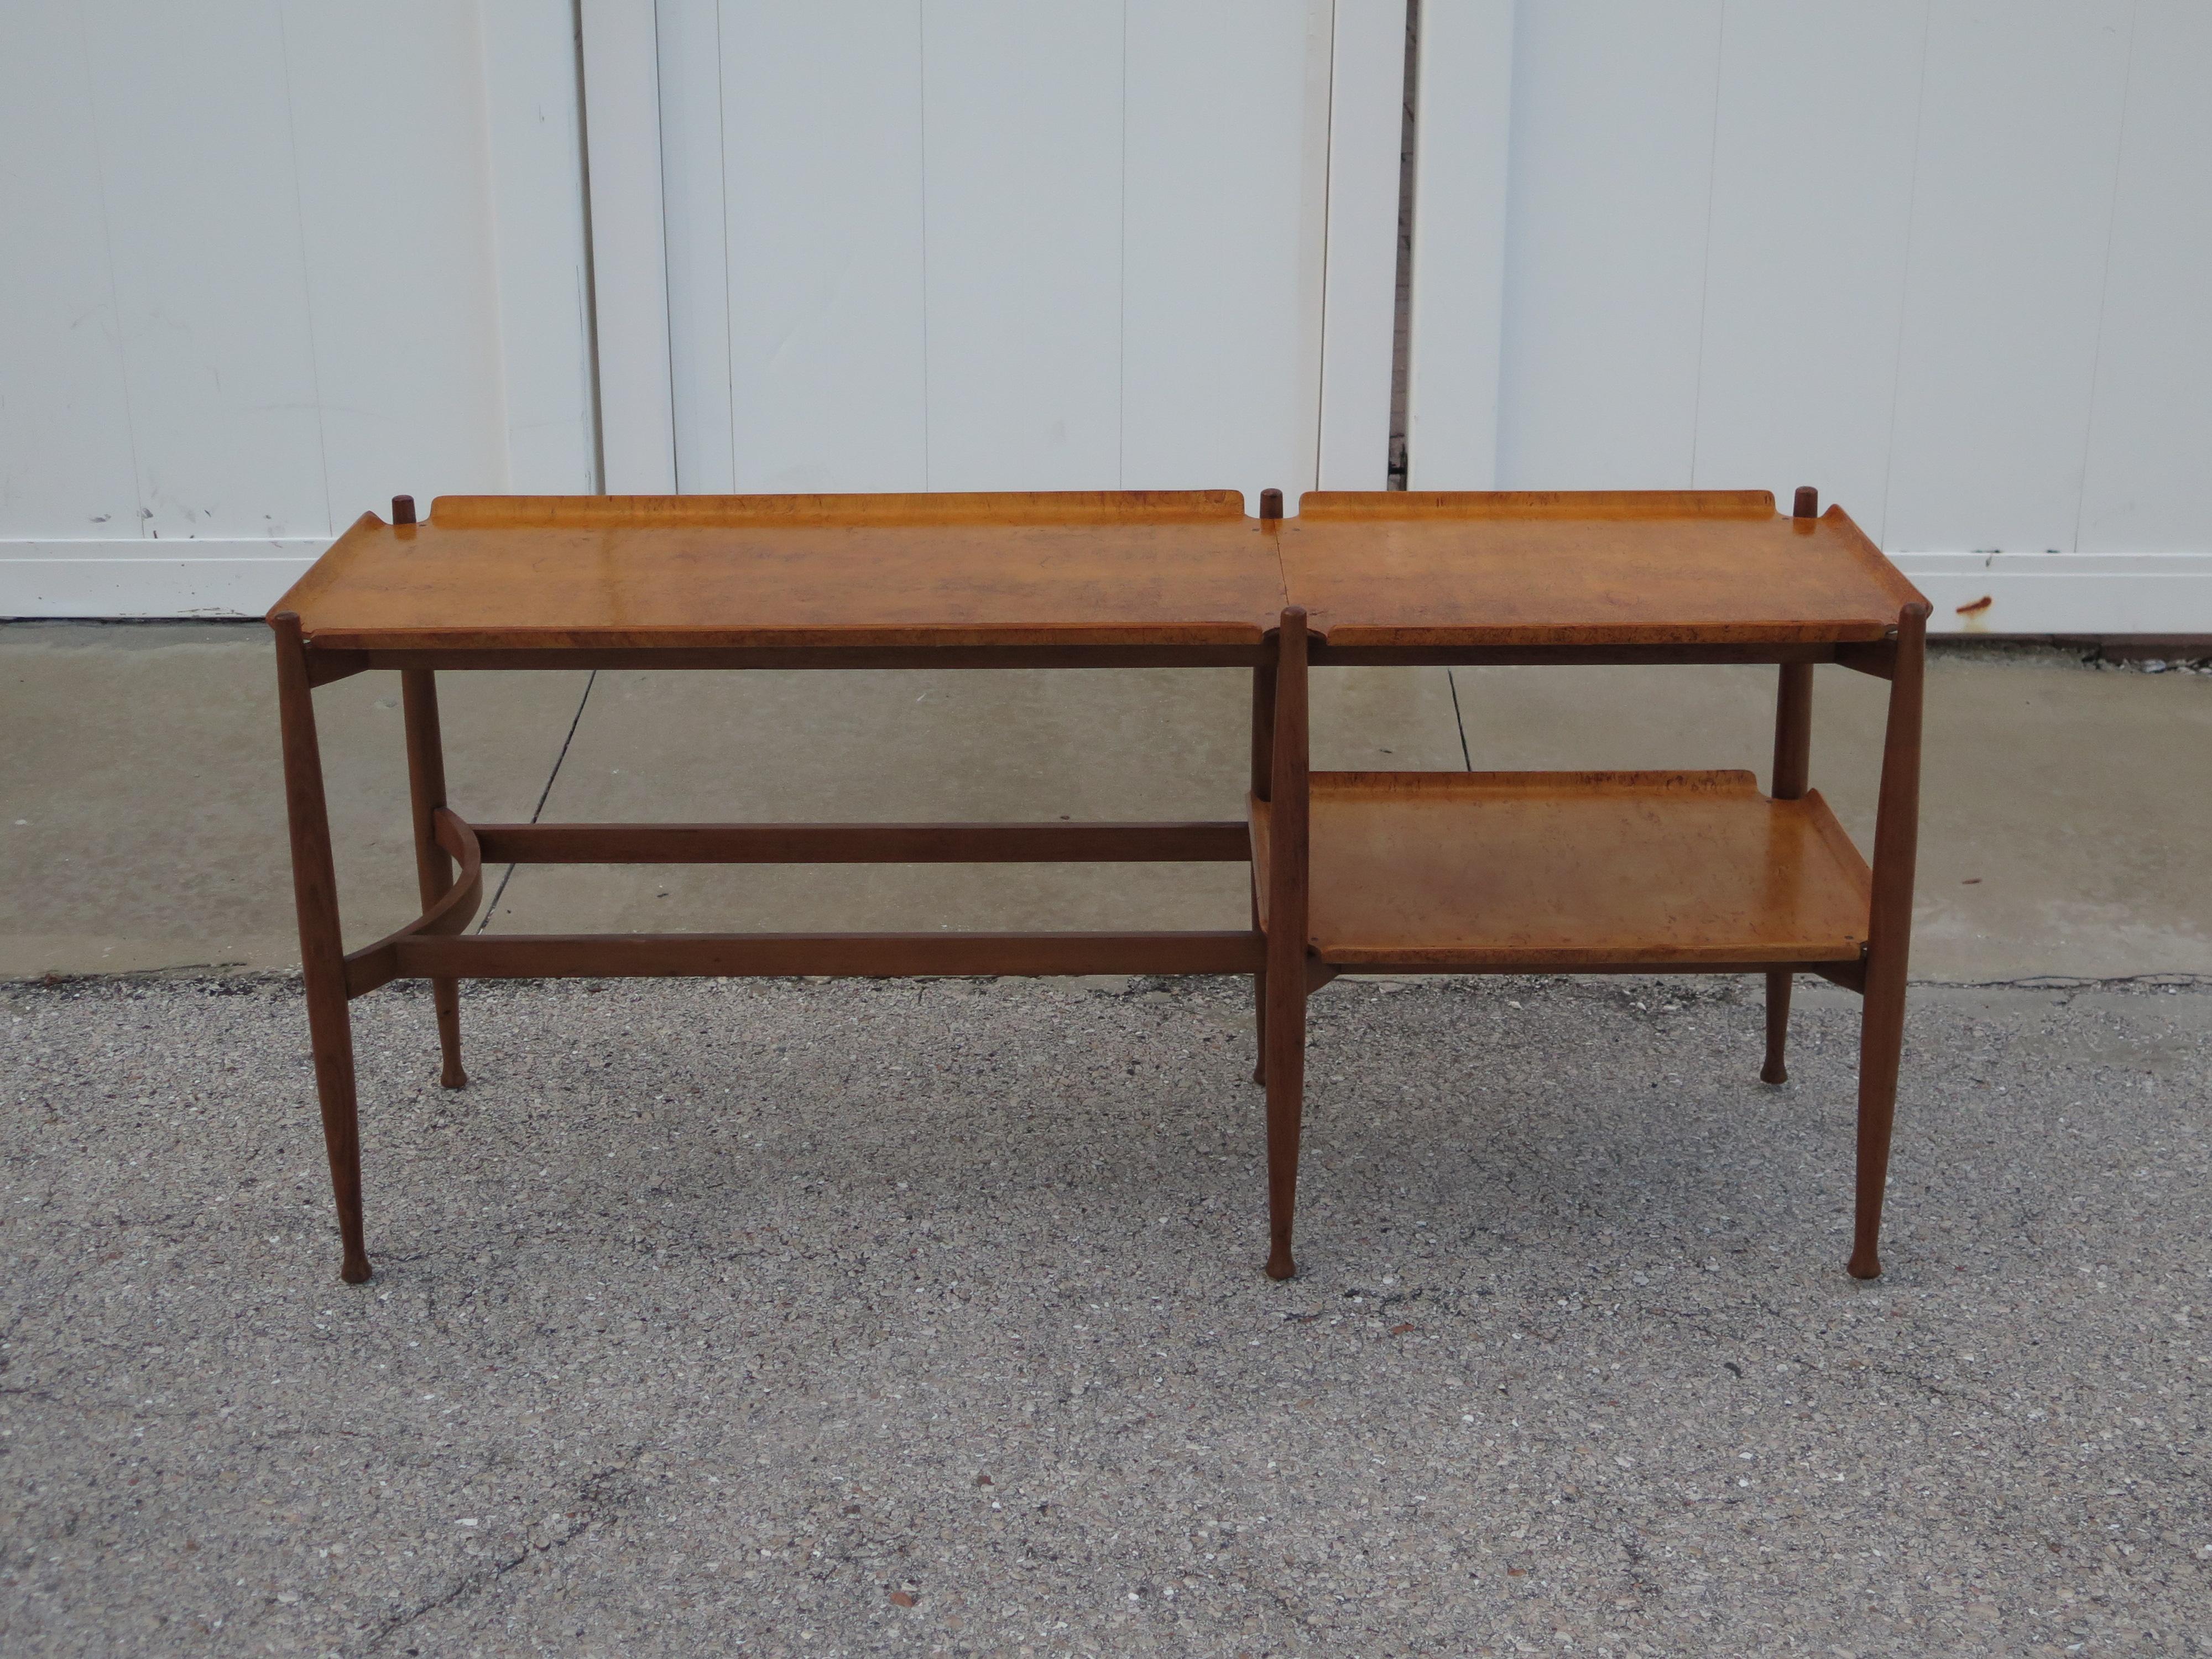 Canapé ou table console Dunbar insolite. Fabriqué en bois de rose et en bouleau de Carélie. Etagère inférieure pour un rangement supplémentaire.